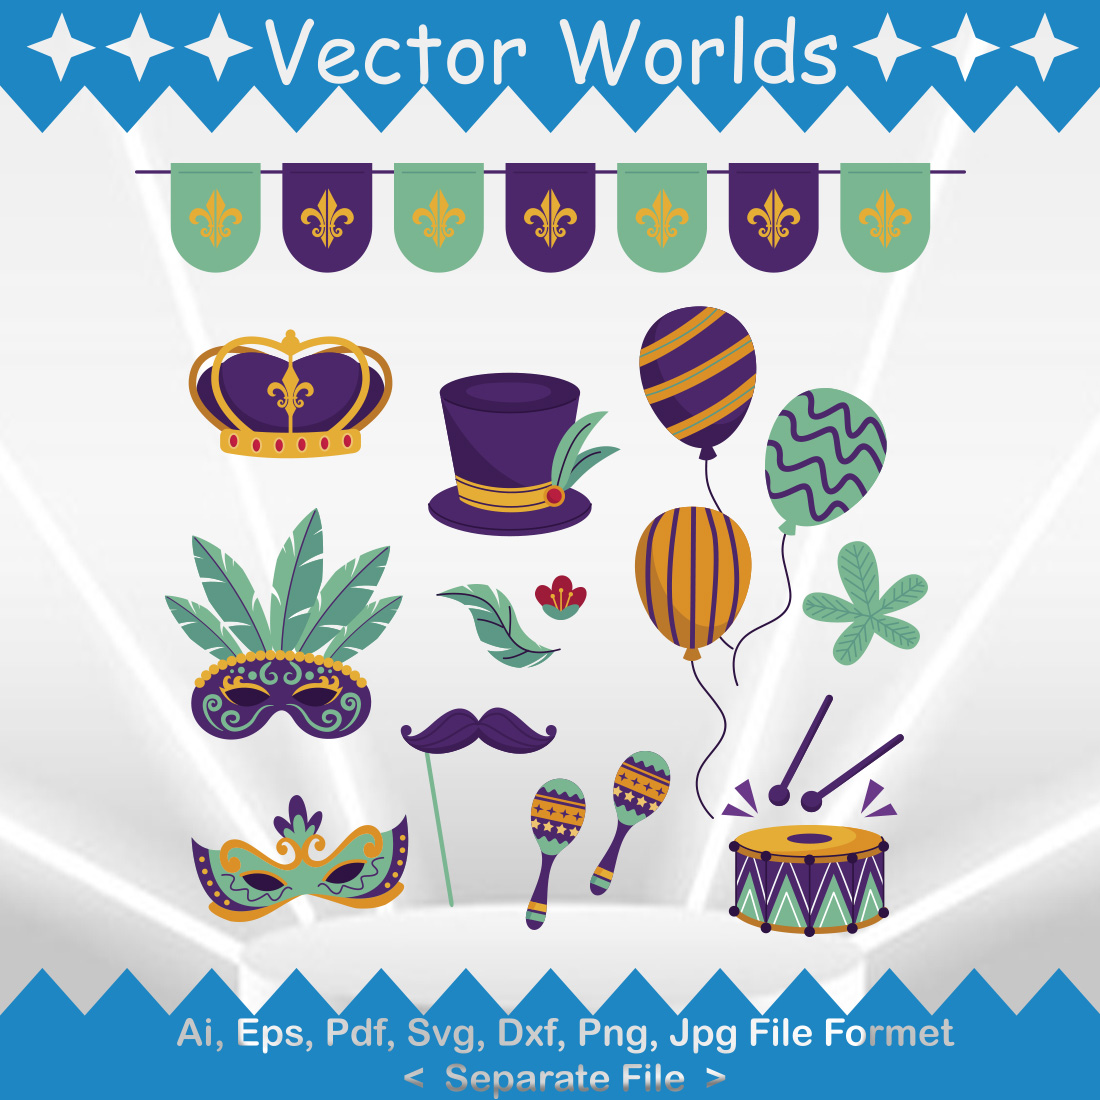 Mardi Gras SVG Vector Design cover image.